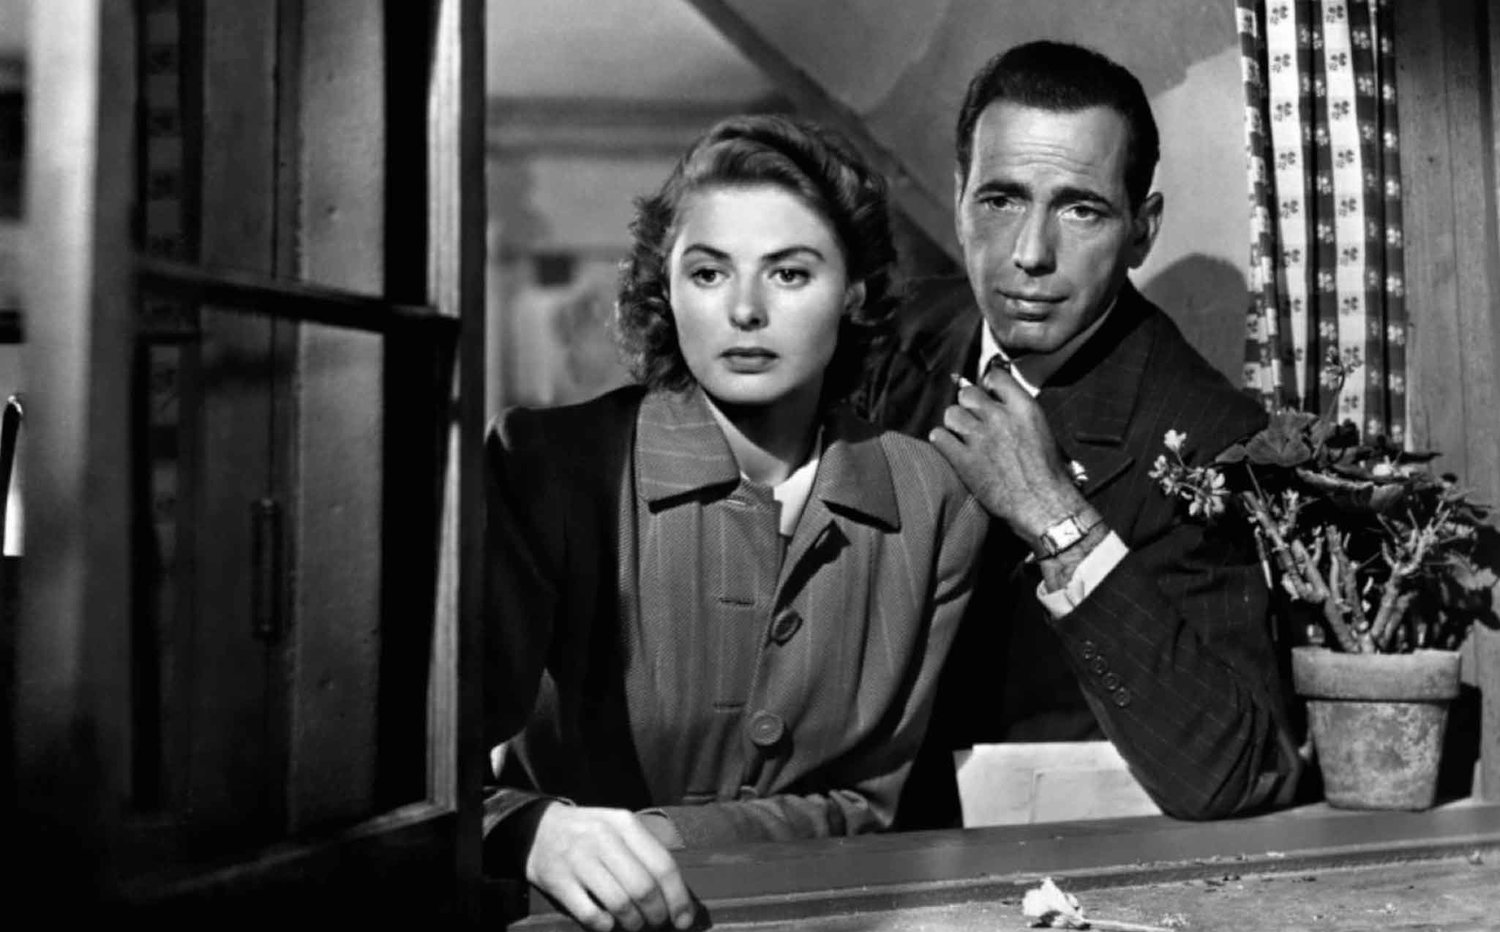 1942 Casablanca